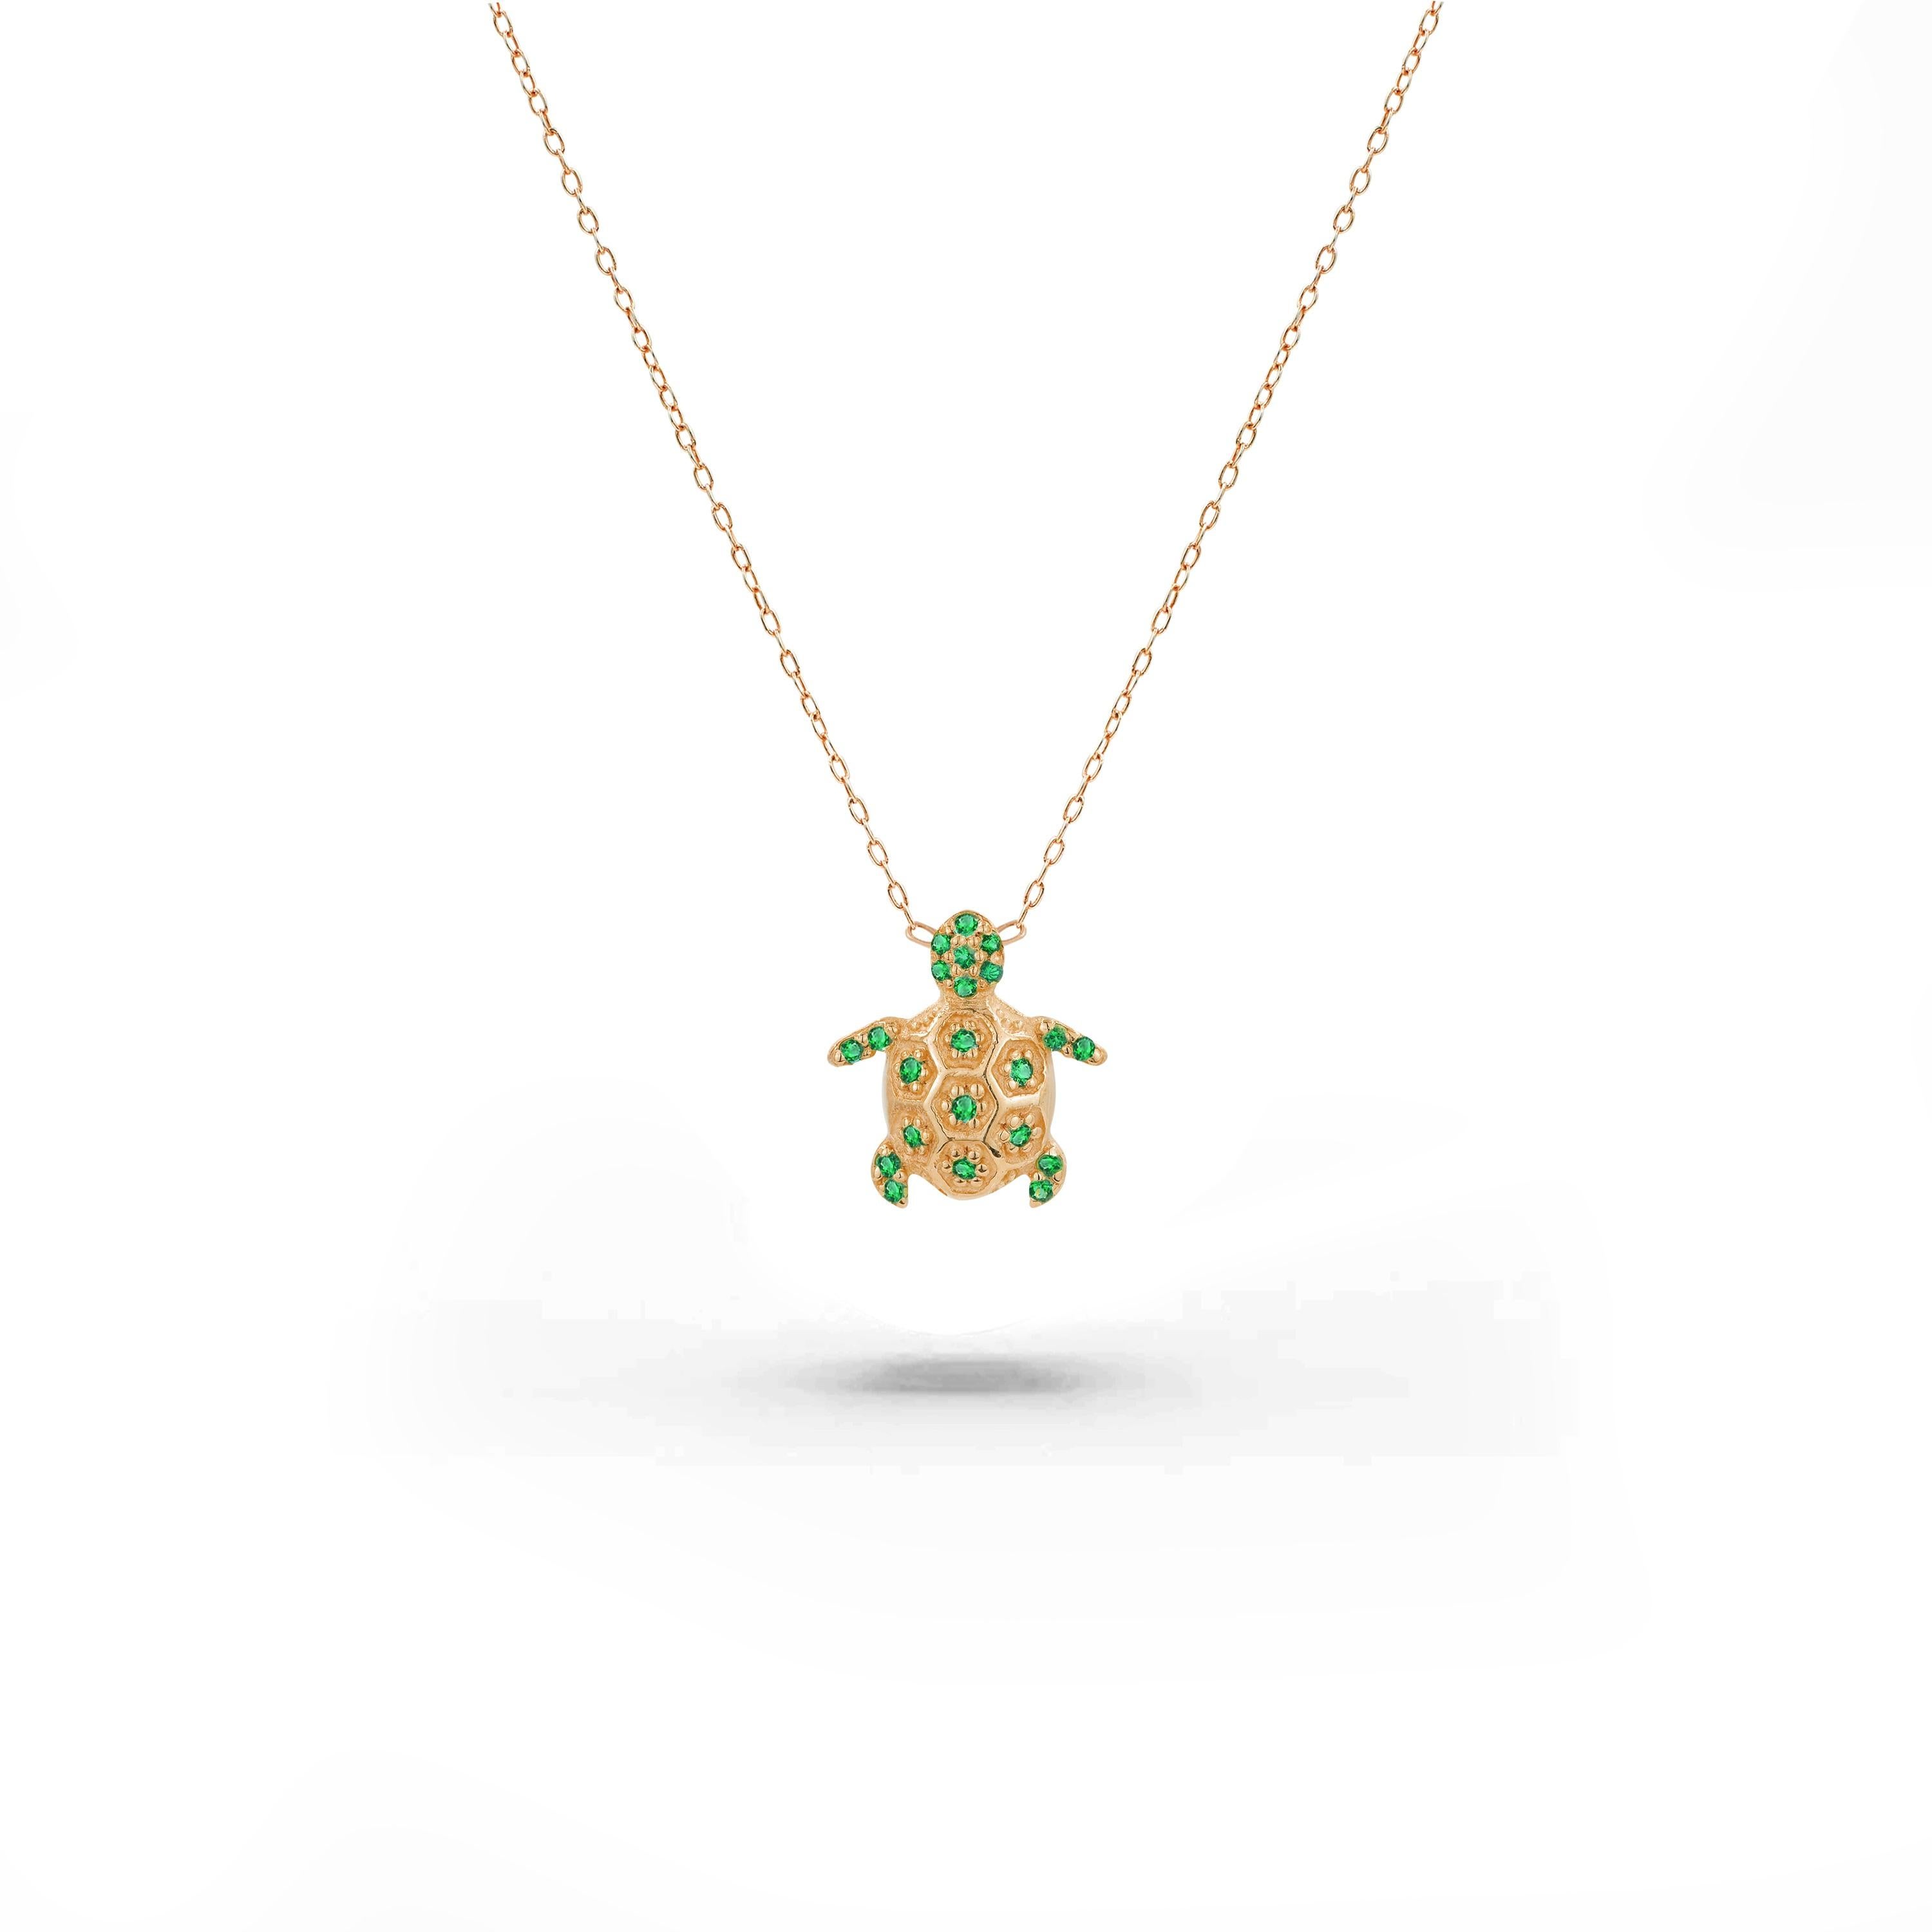 Le collier Emerald Turtle est fabriqué en or massif 18 carats, disponible en trois couleurs : or blanc, or rose et or jaune.

Ce magnifique petit collier minimaliste est orné d'une émeraude naturelle de qualité AAA. Parfait pour être porté seul pour